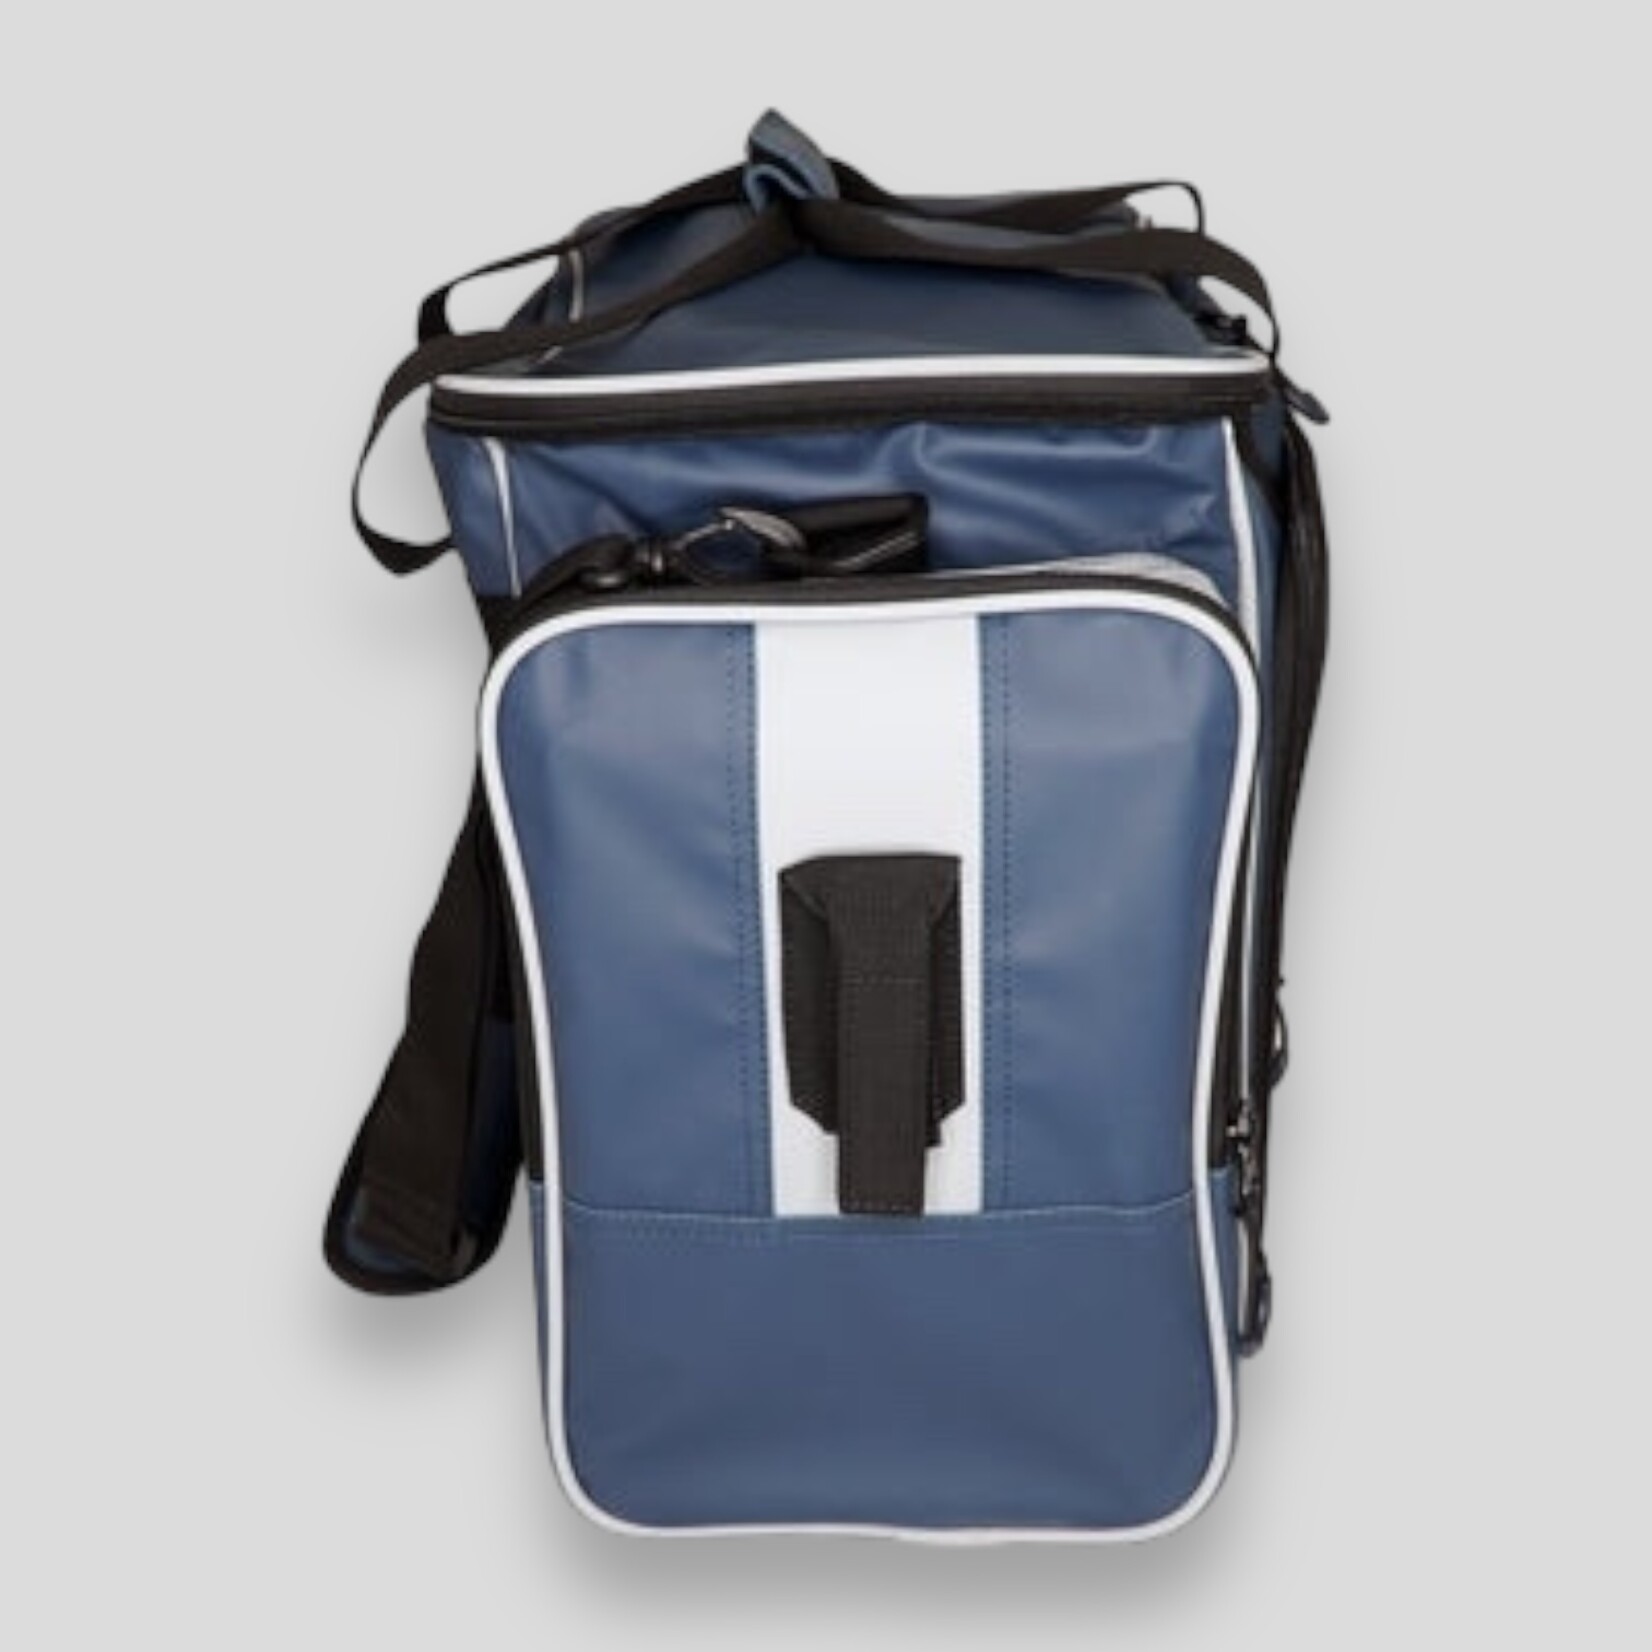 Deckhand Sports Deckhand Sports Tackle Bag